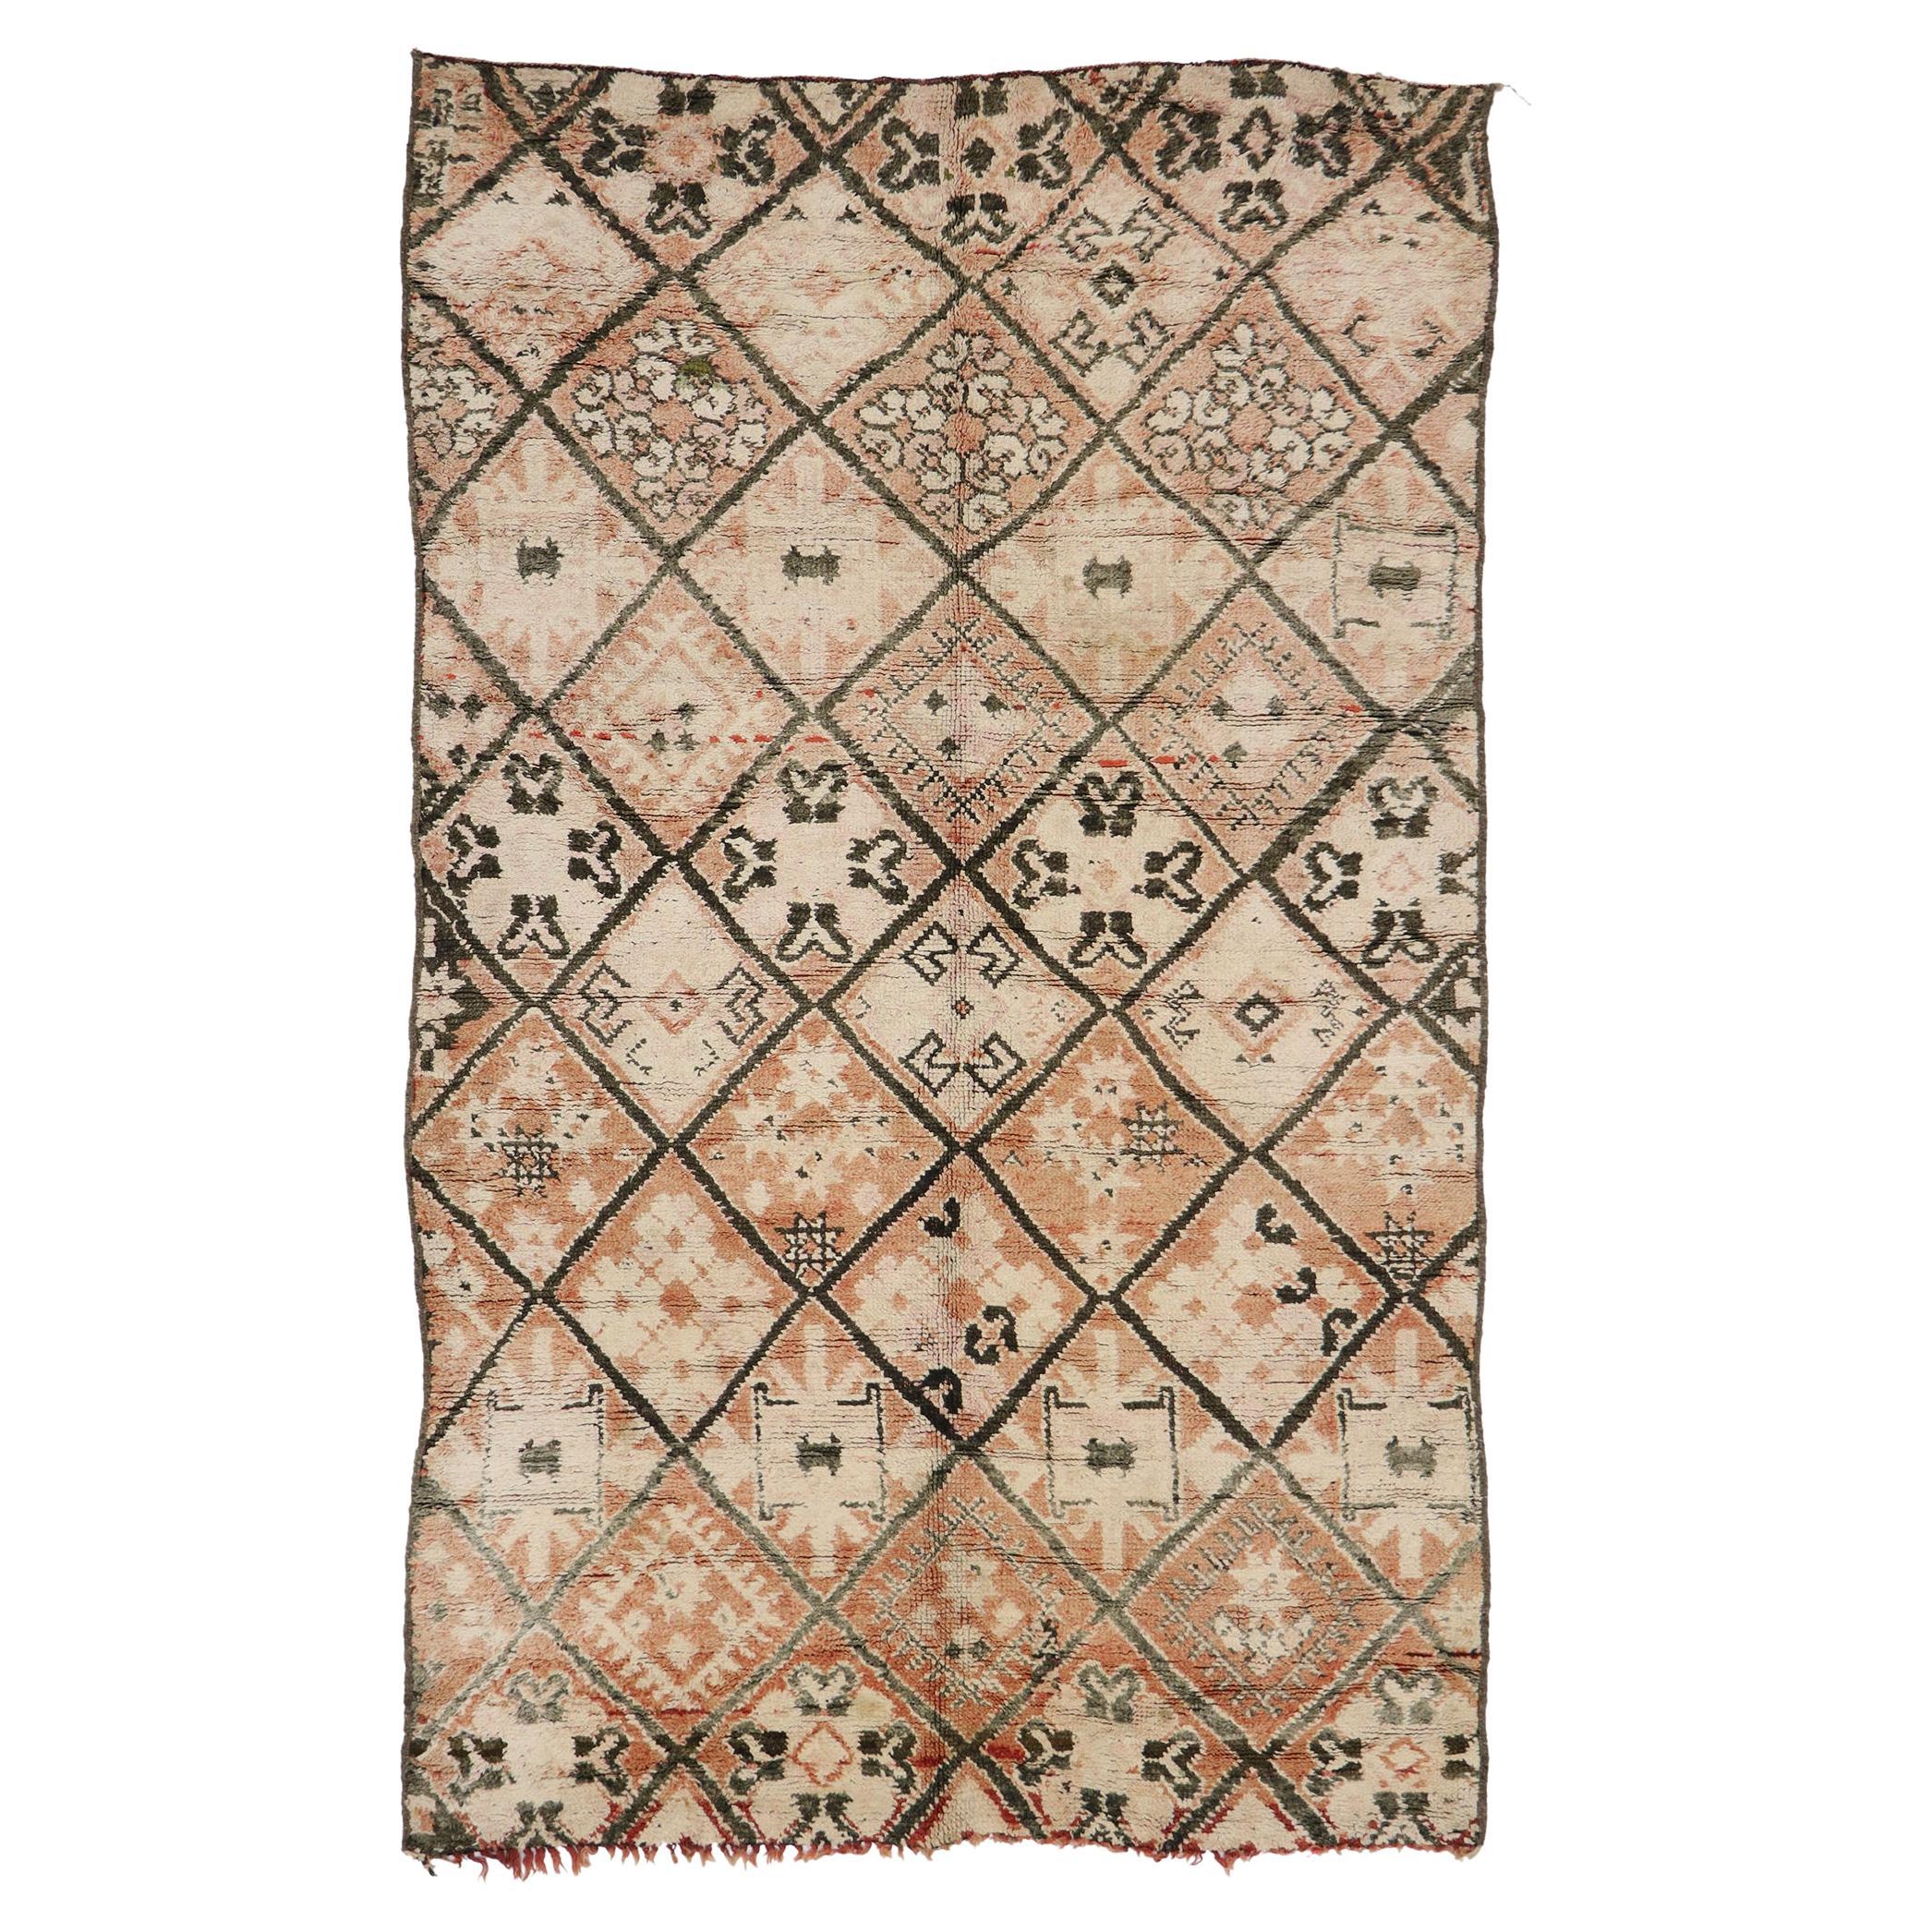  Marokkanischer Beni Ourain-Teppich im Vintage-Stil, Berber Stammeskunst Marokko